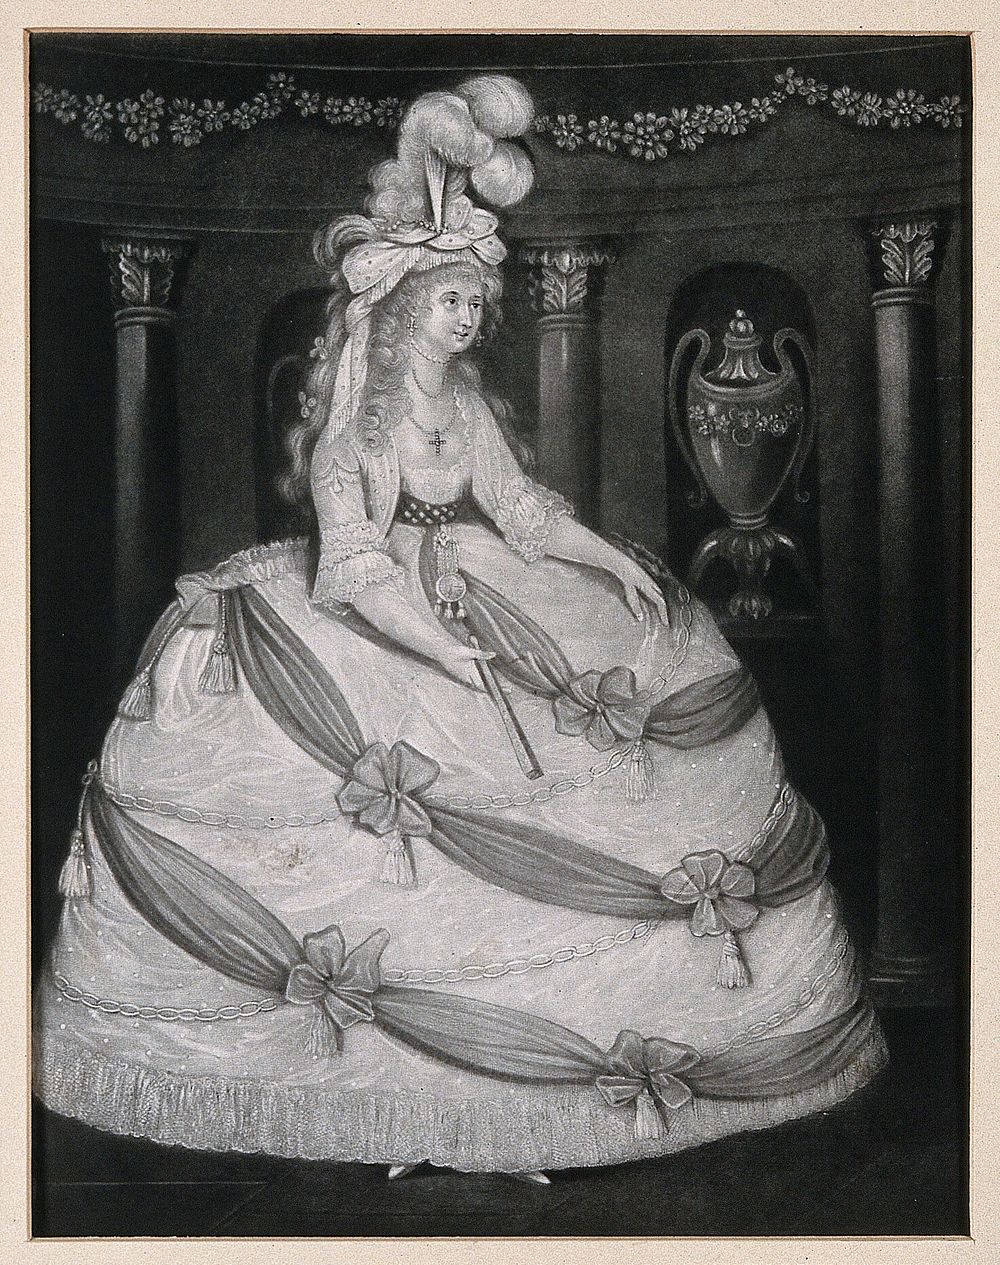 Caroline of Brunswick, Princess of Wales, wearing a lavish dress and a high head-dress of feathers. Mezzotint, 1795.